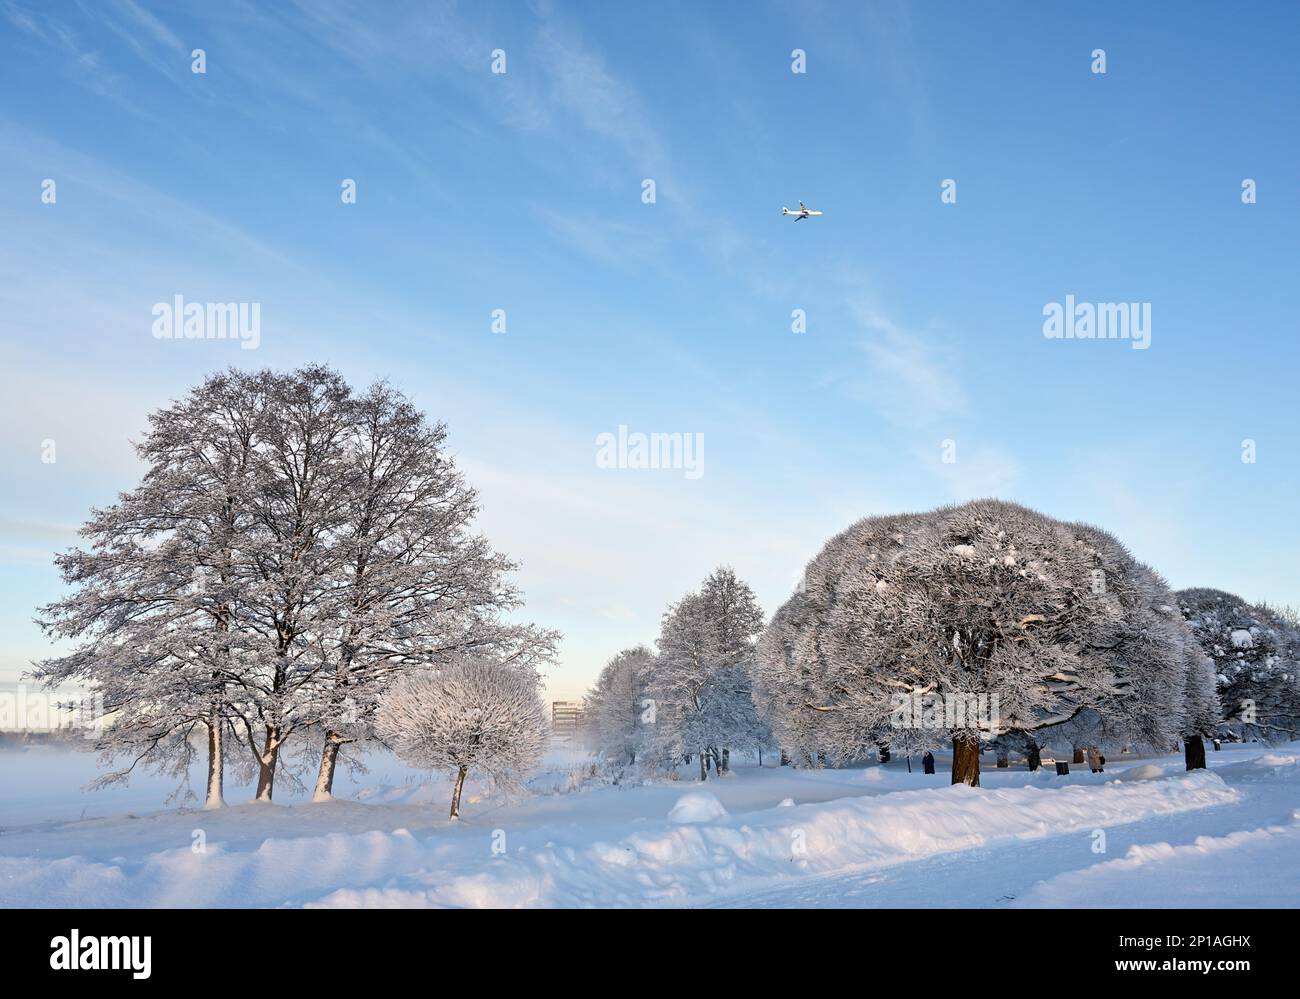 Wunderschöne Winterlandschaft im Park an einem sonnigen Tag, Flugzeug am blauen Himmel, Bäume und Büsche mit Schnee bedeckt Stockfoto